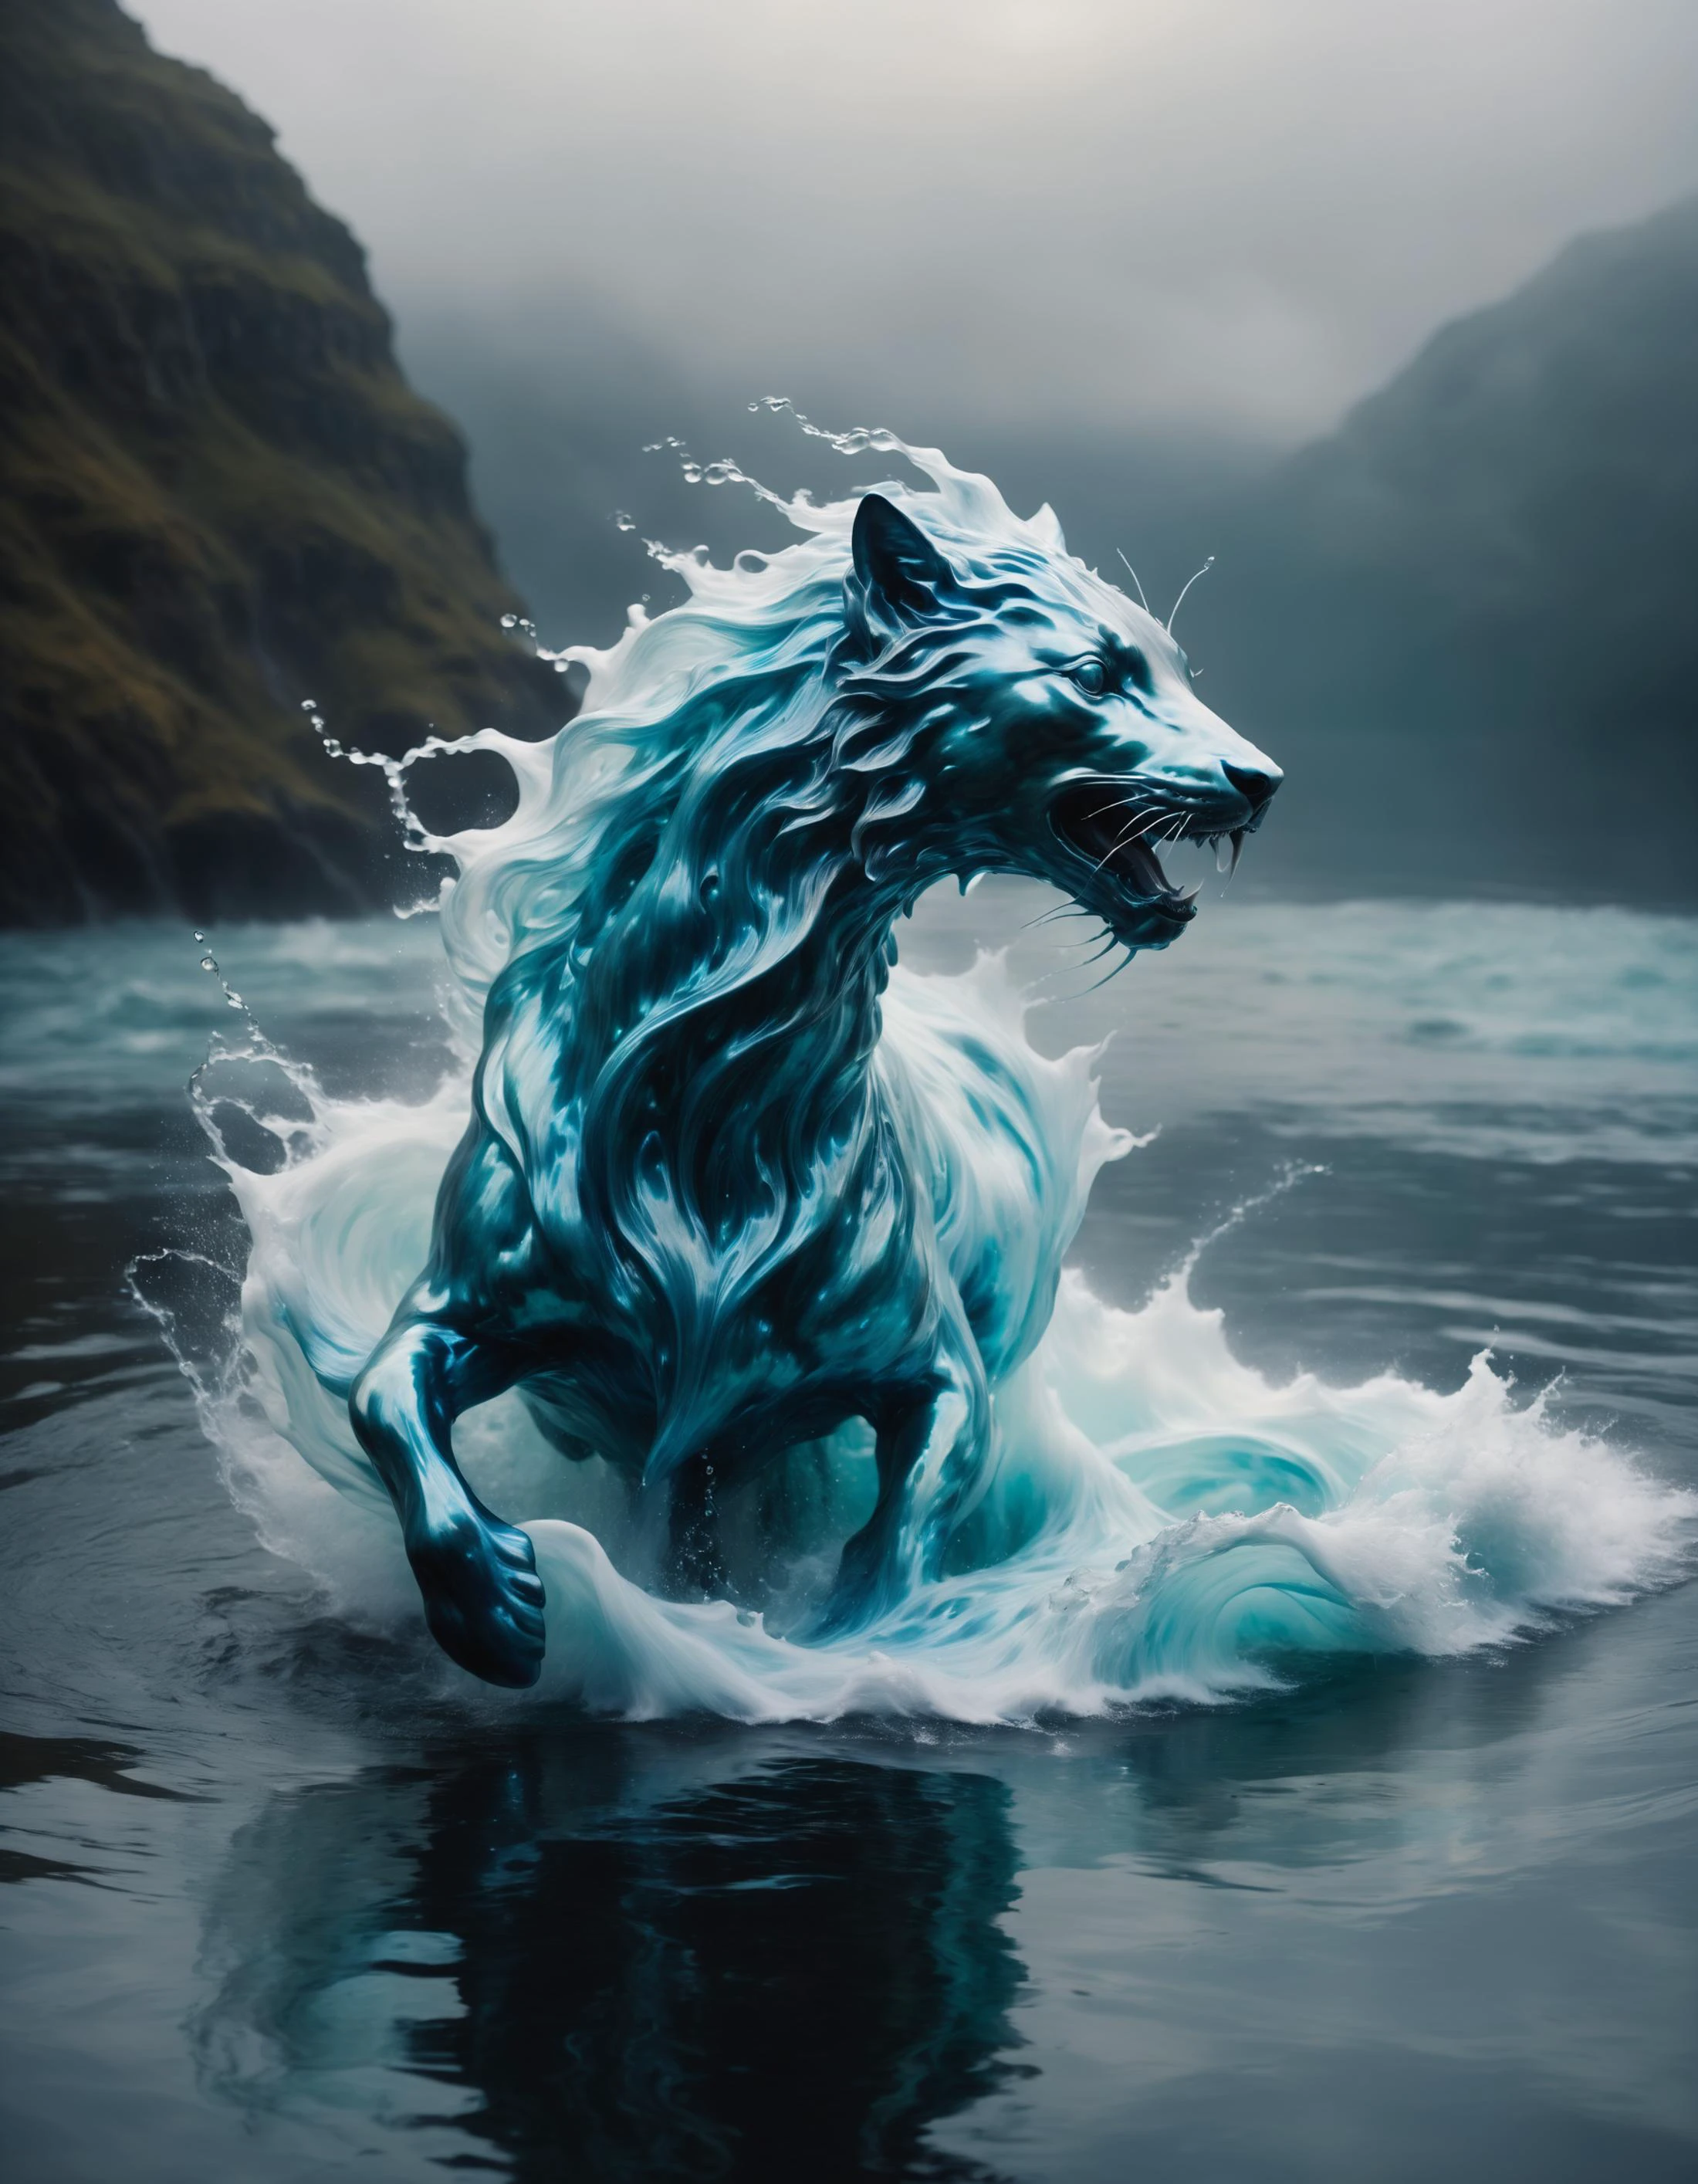 Criatura fantástica feita de águas turbulentas, forma etérea, inspirado no surrealismo